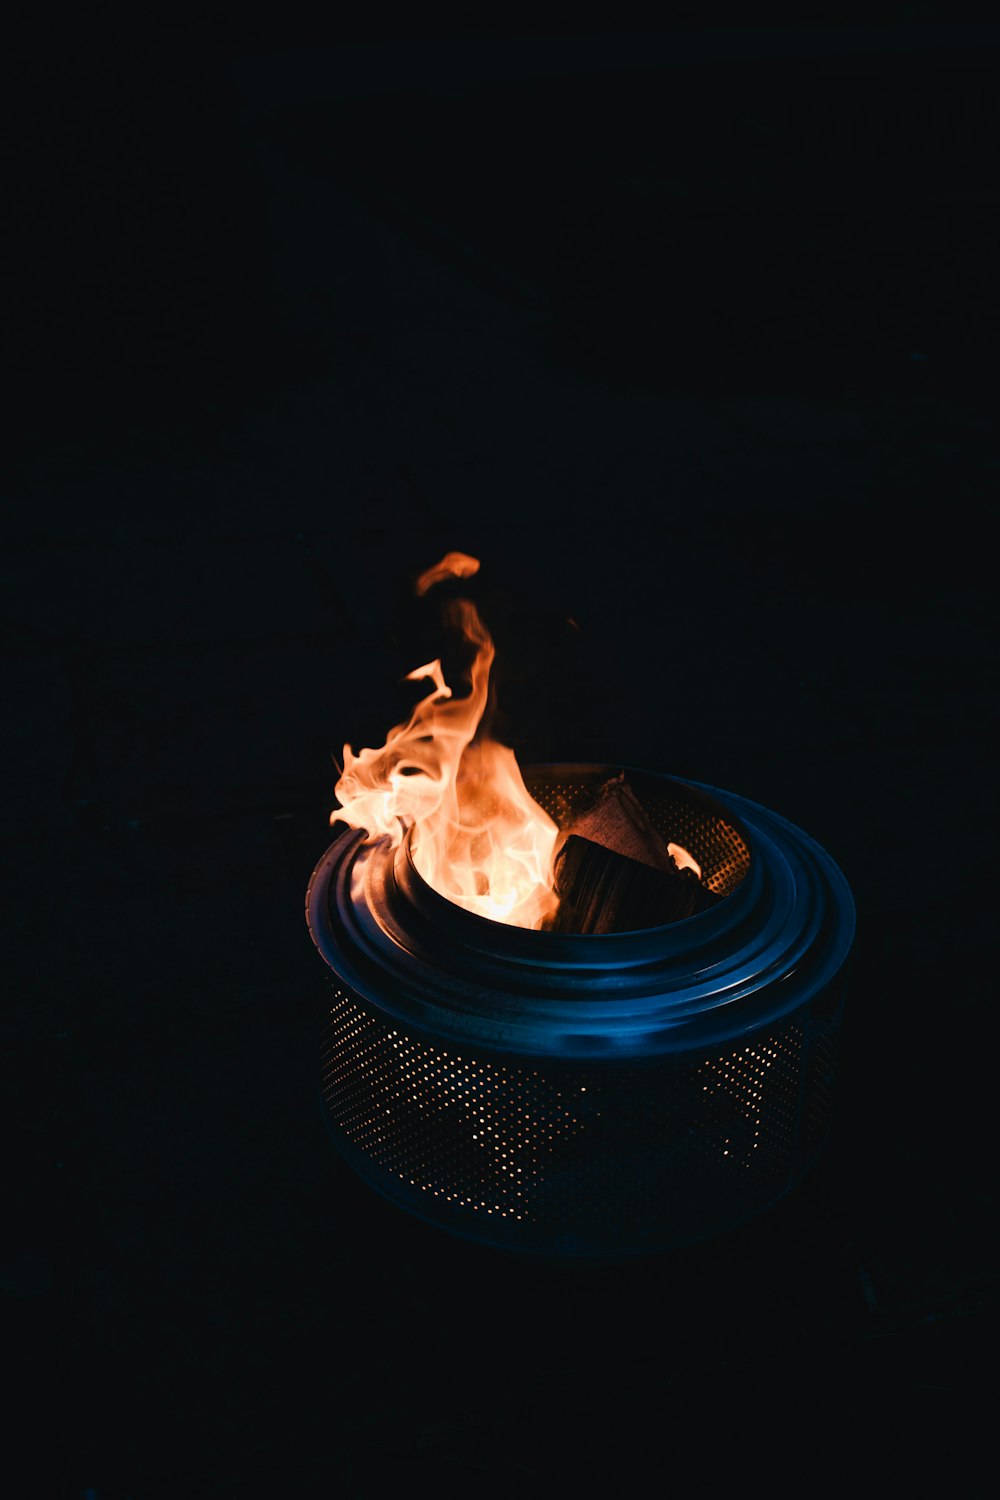 photo of burning charcoal